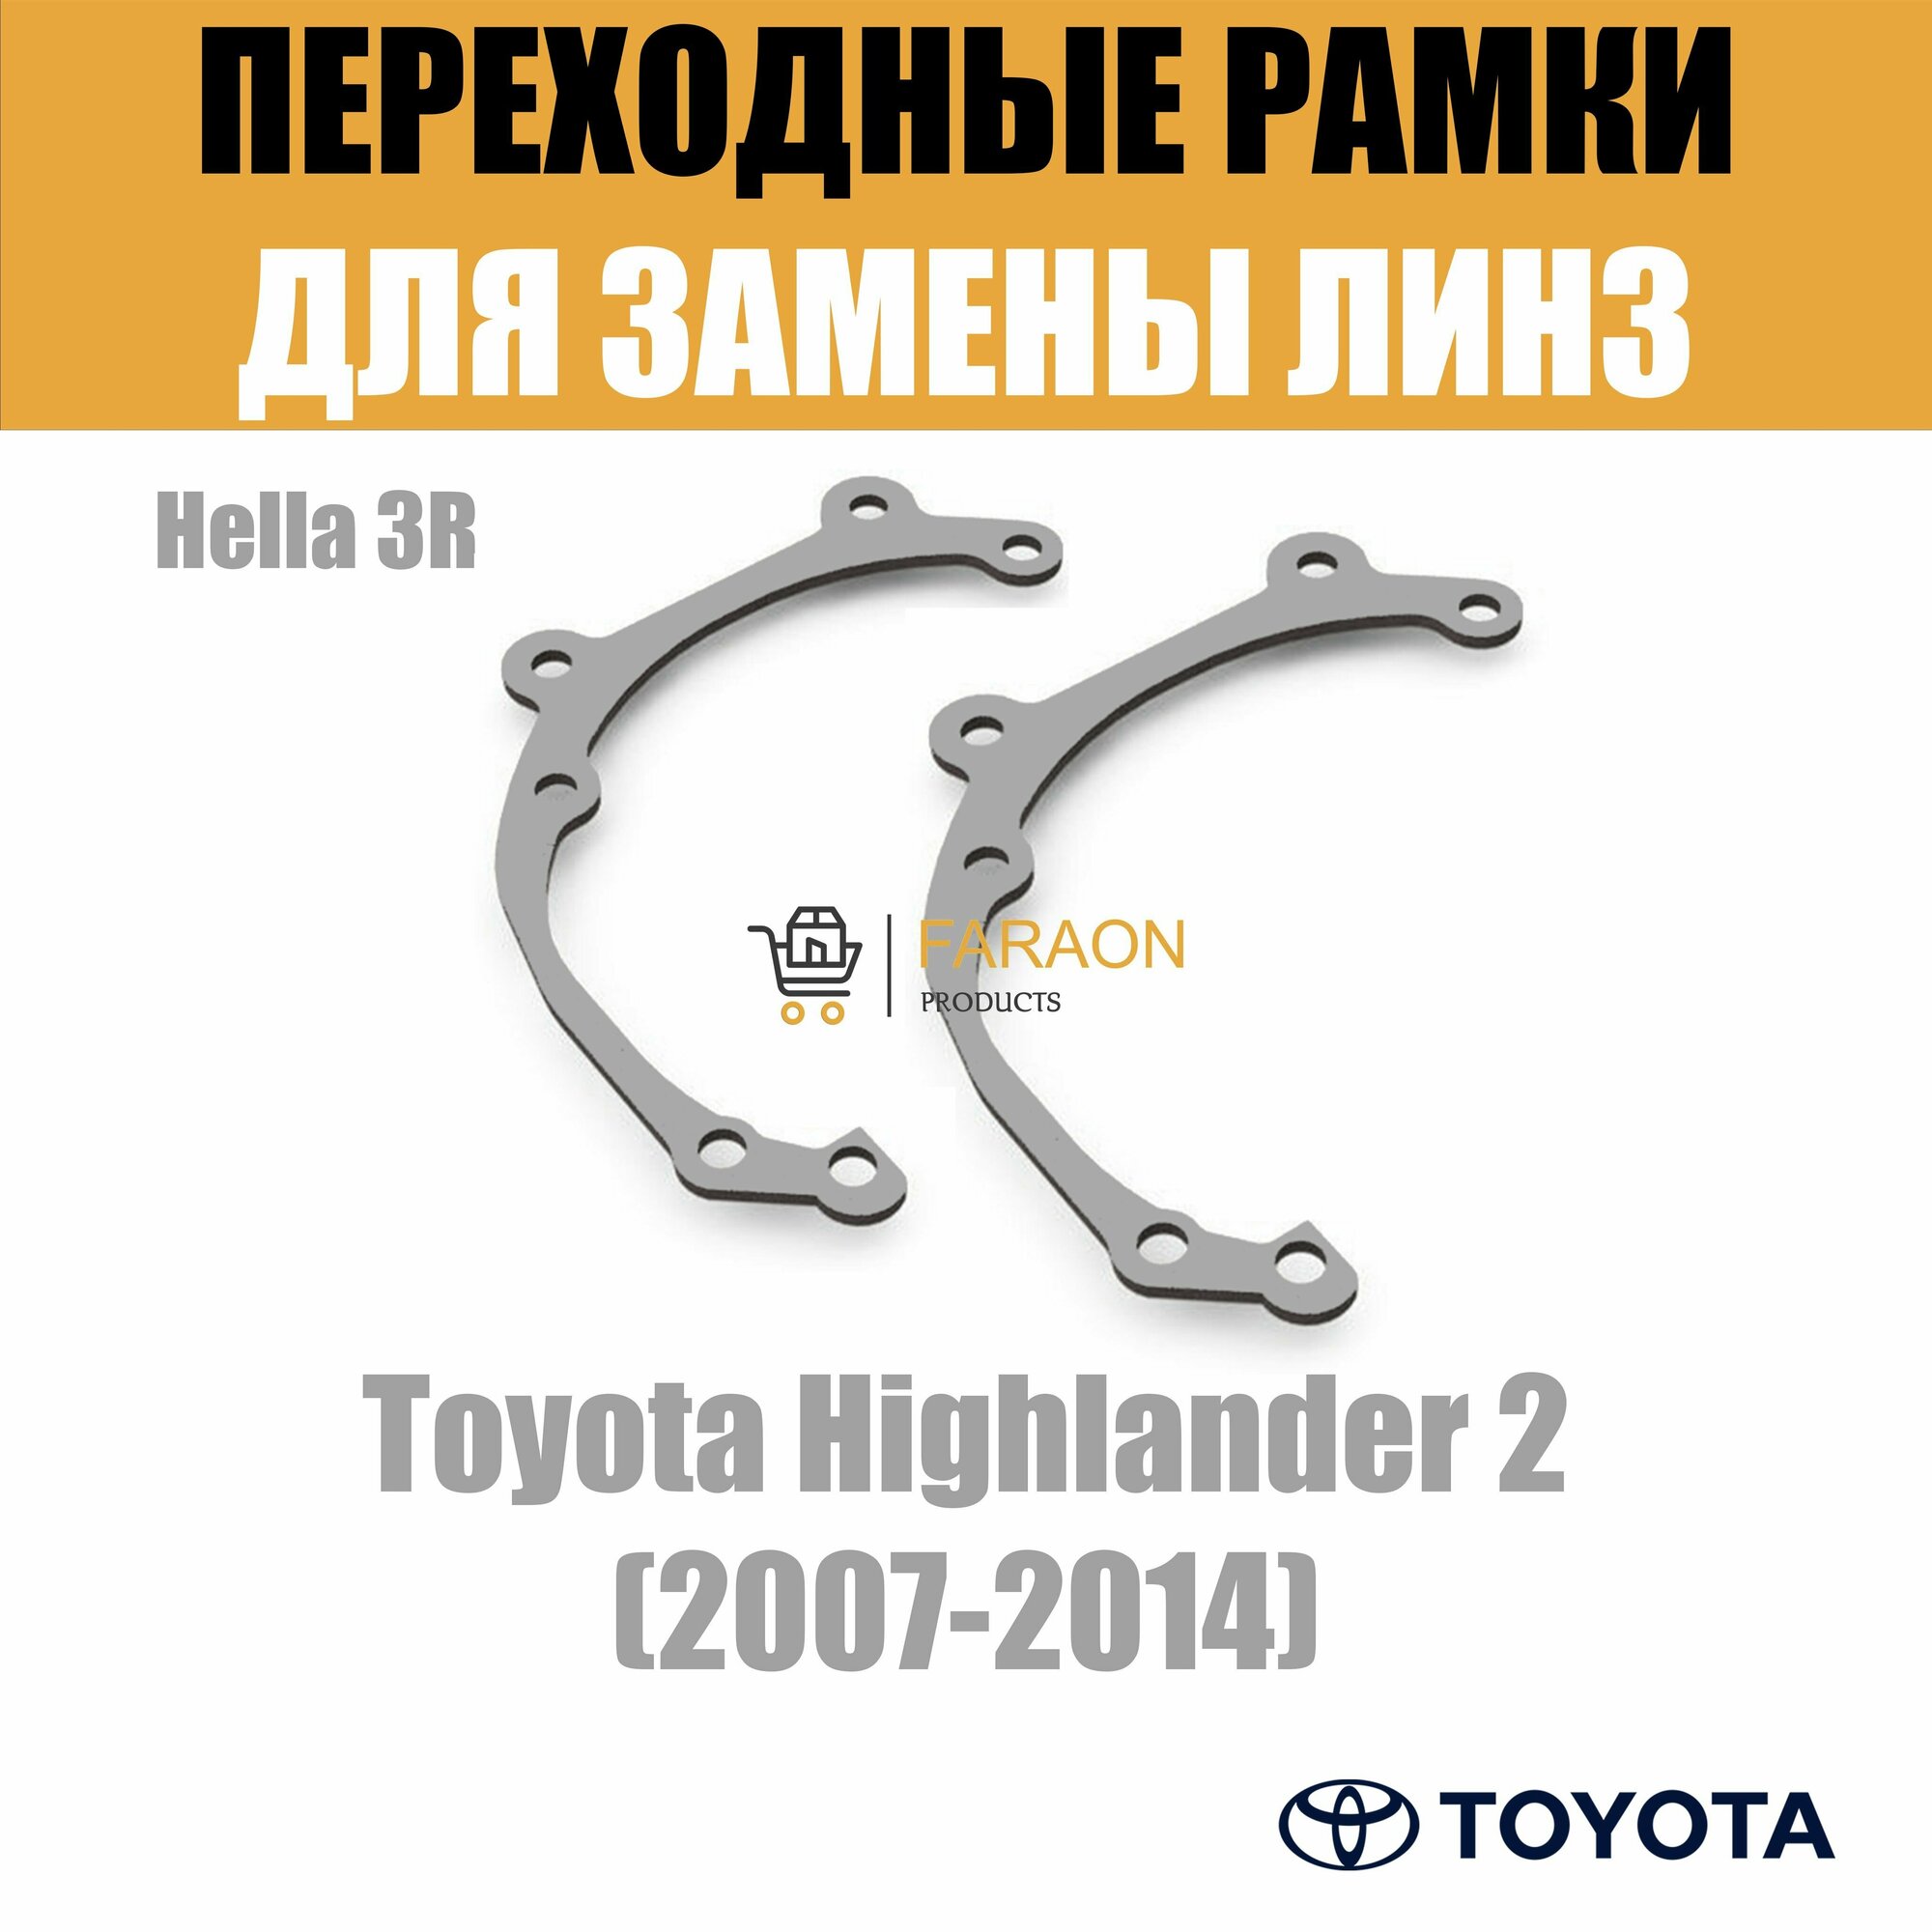 Переходные рамки для Toyota Highlander 2 (2007-2014) под модуль Hella 3R/Hella 3 (Комплект 2шт)